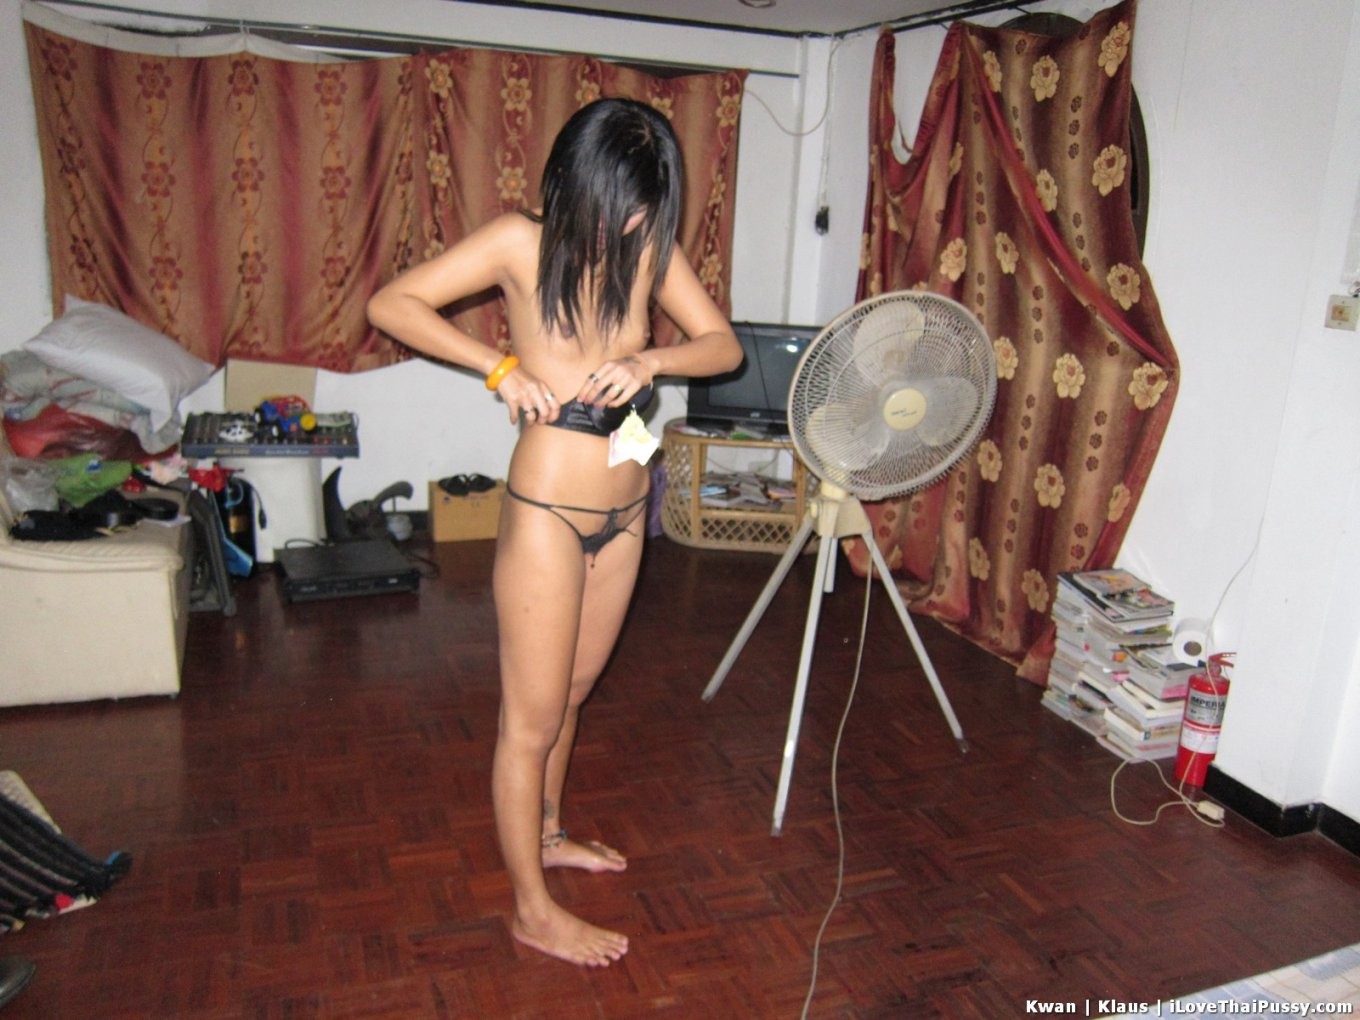 Une prostituée thaïlandaise dégoûtante aime le sexe anal sans préservatif avec des touristes asiatiques sales.
 #68115636